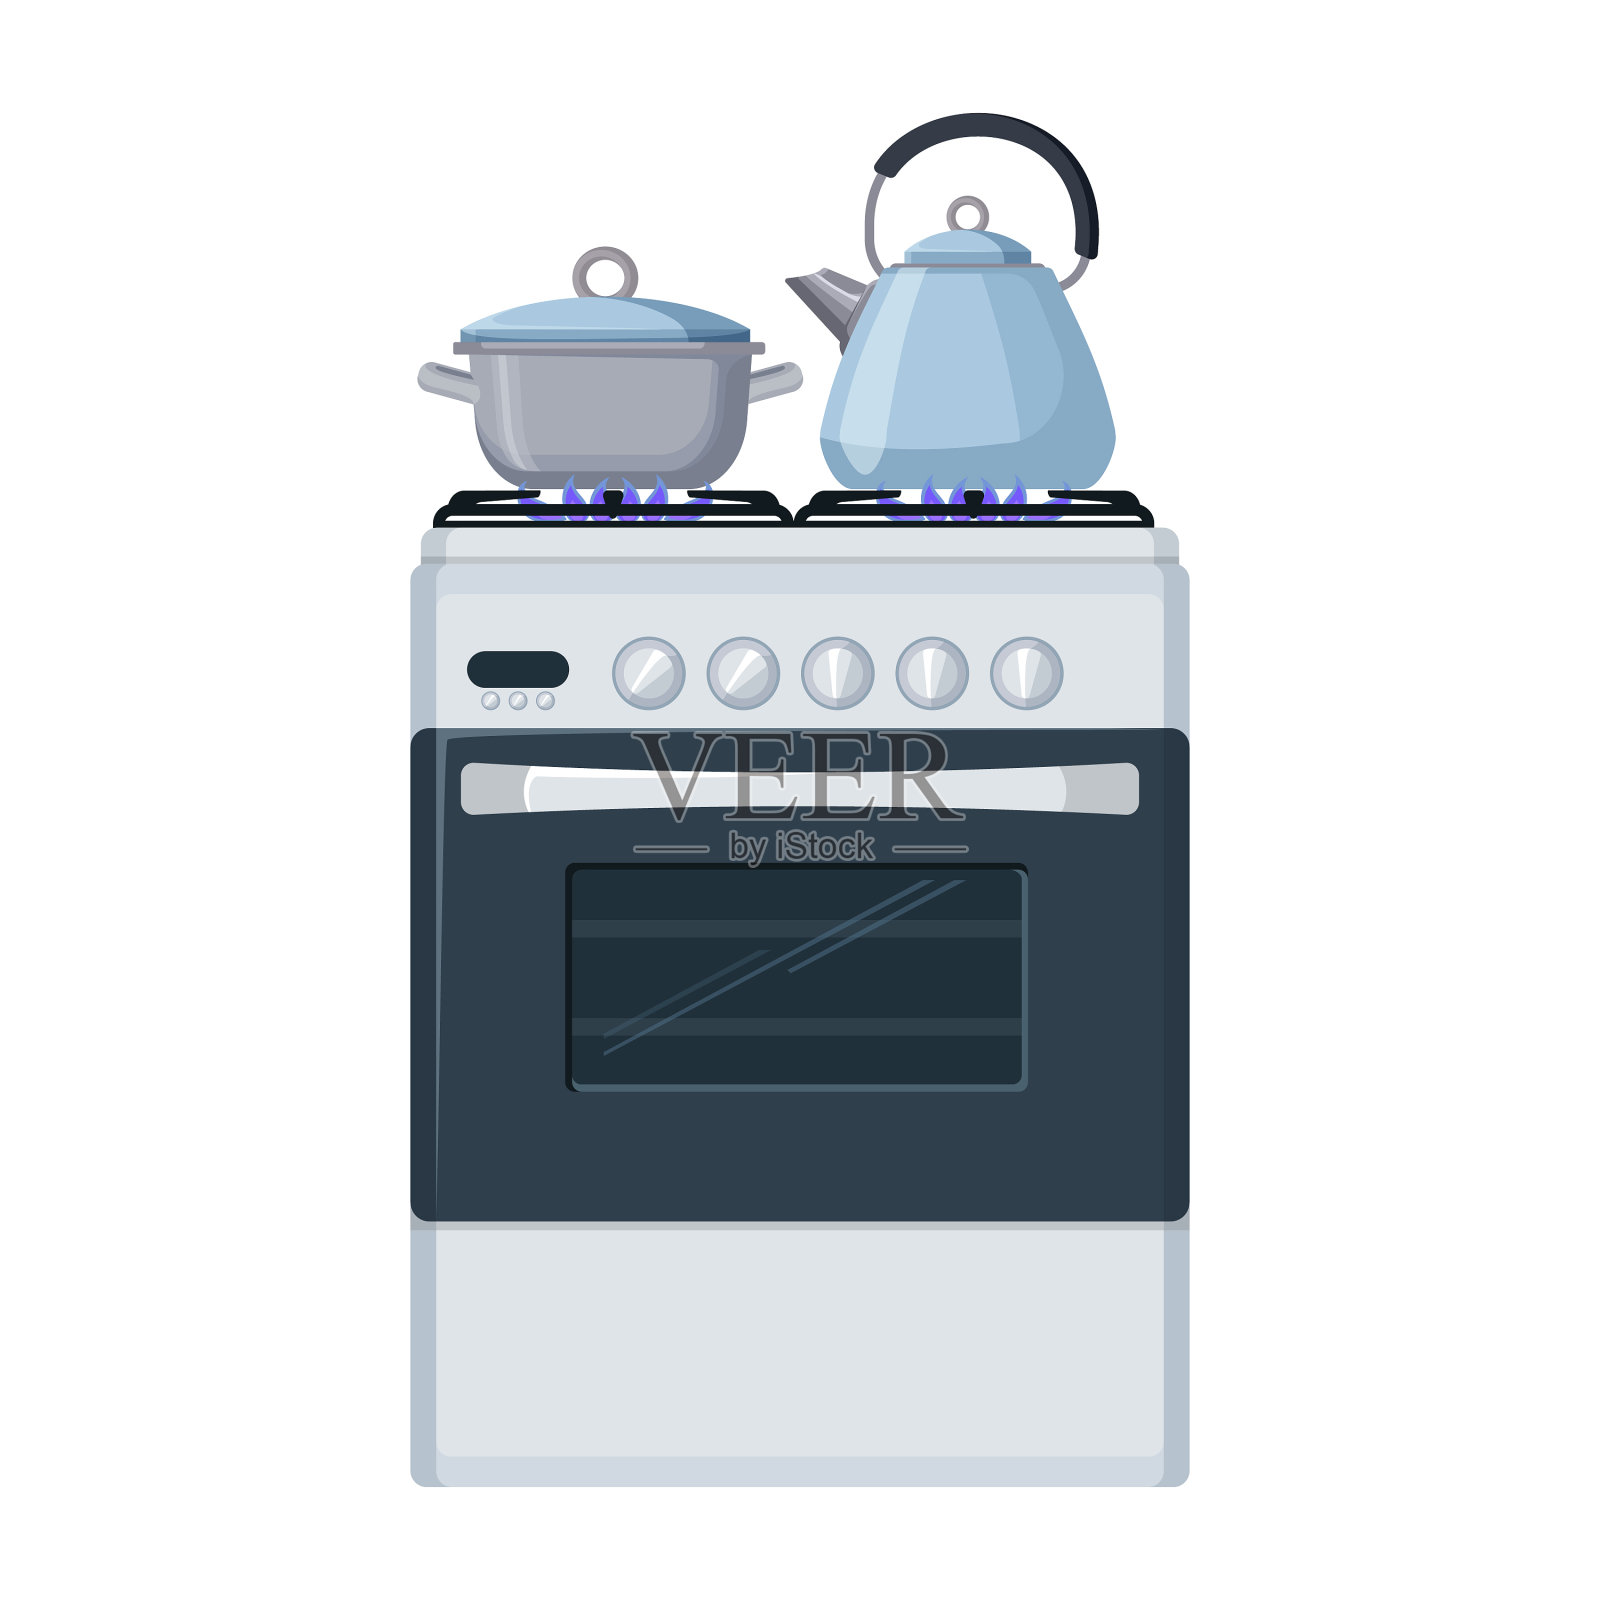 煤气炉与平底锅和小锅的家庭厨房食物设计元素图片